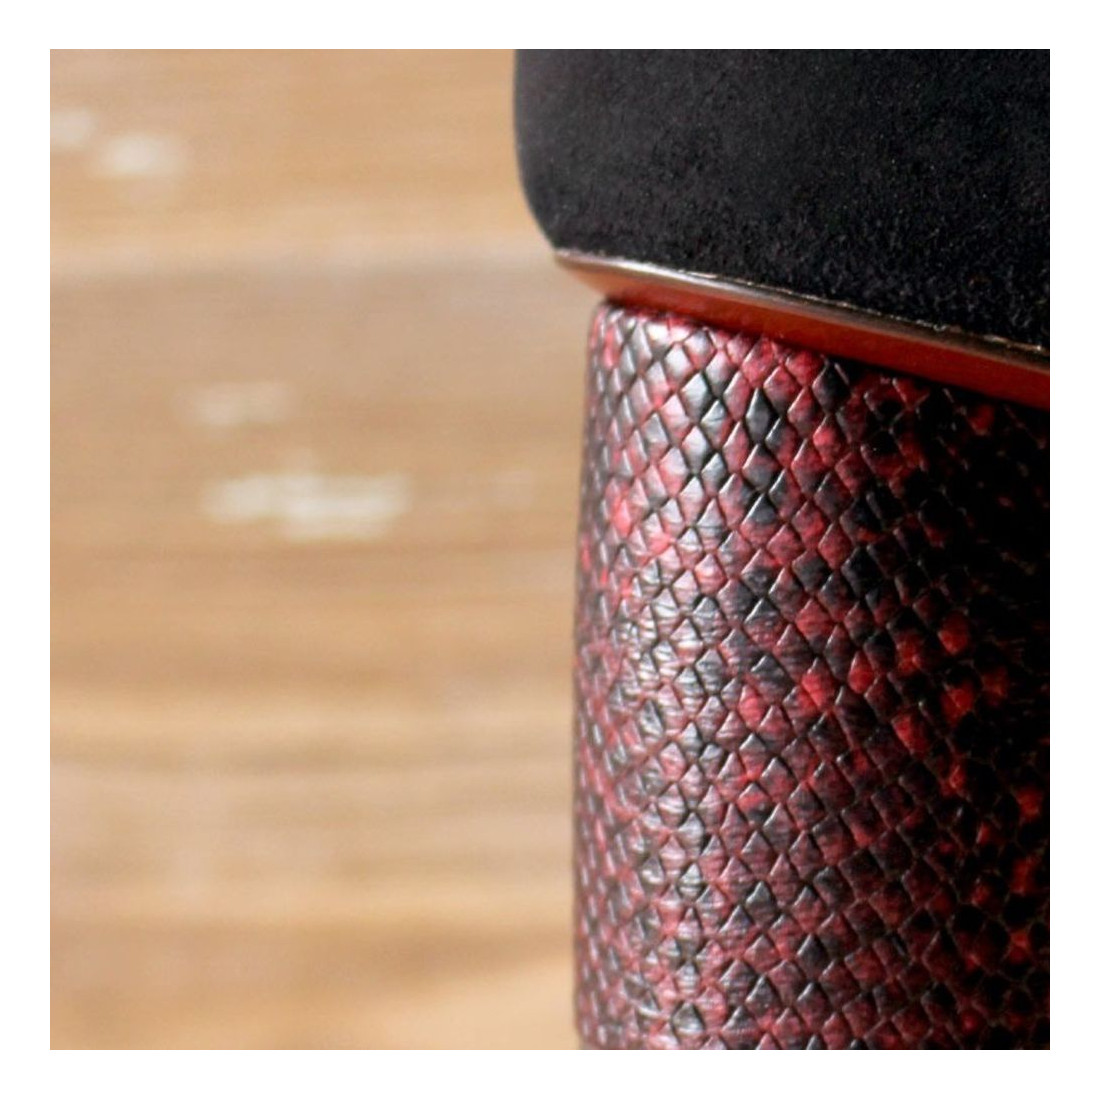 Chie Mihara Loa Schuh aus schwarzem Wildleder mit burgunderfarbenem Absatz